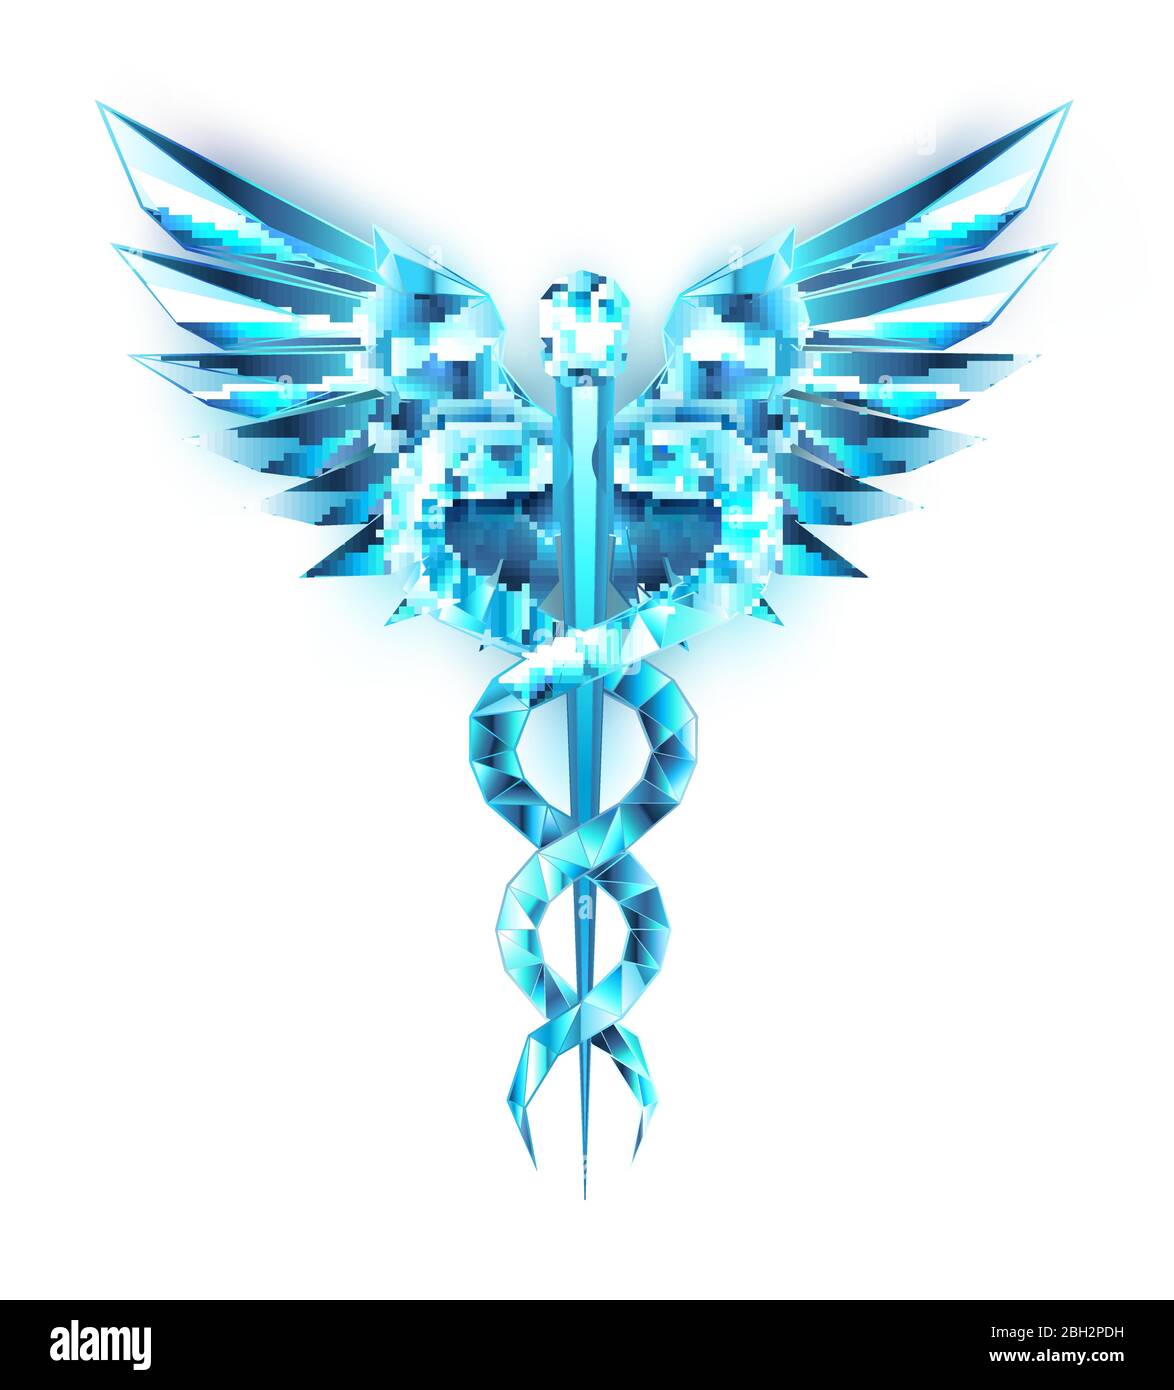 Símbolos de Caduceo de cristal azul sobre fondo negro aislado. Símbolo de poli bajo de la medicina. Ilustración del Vector